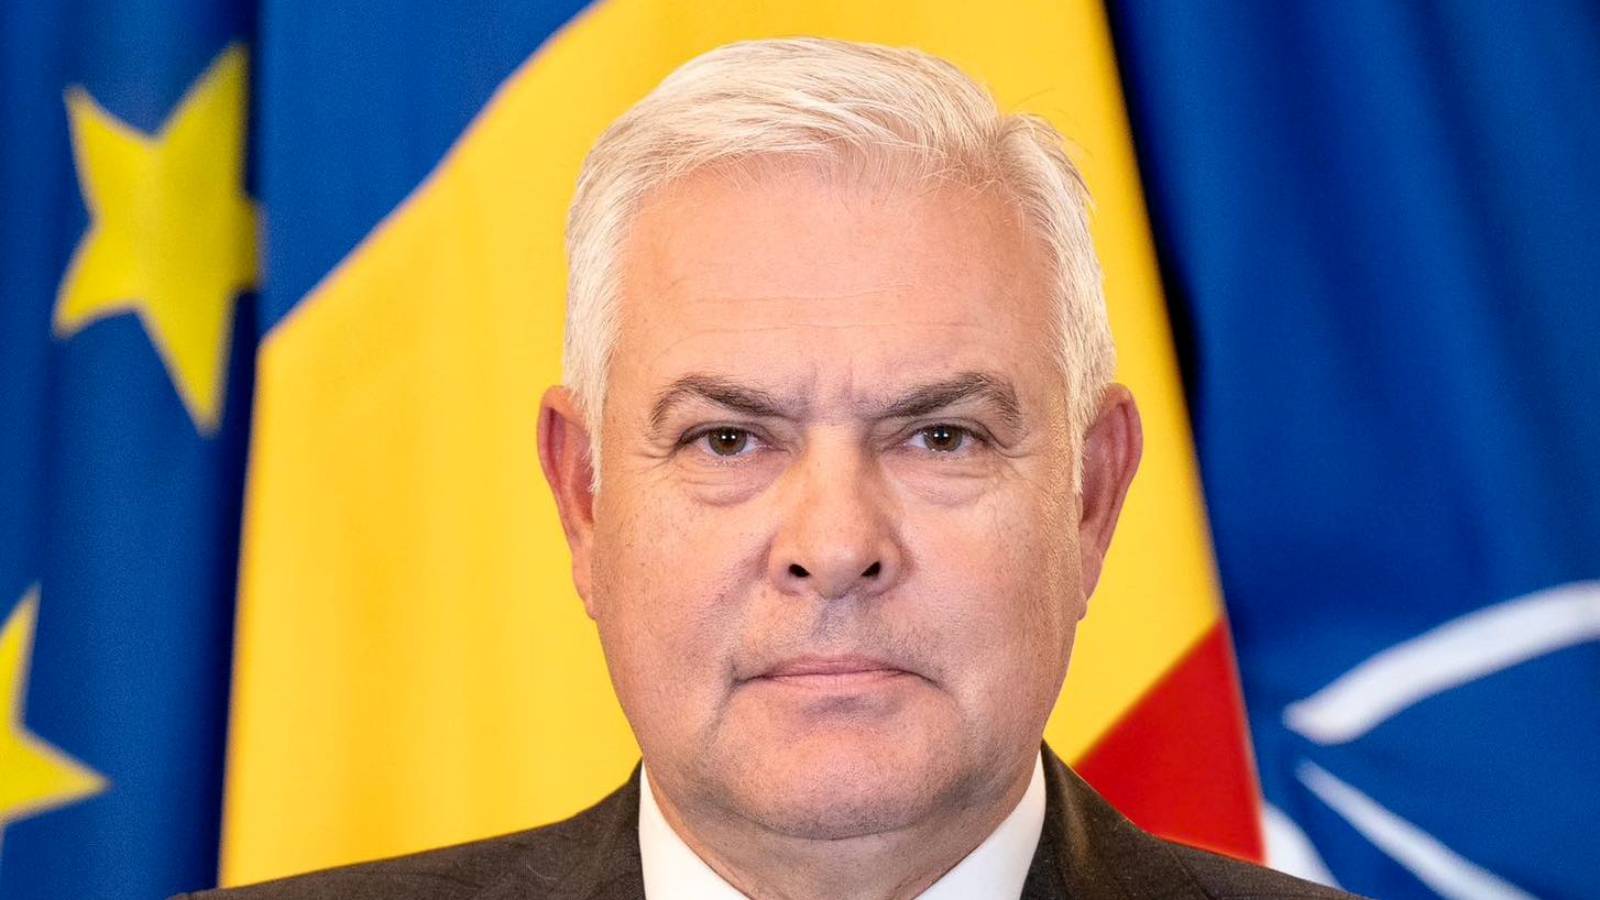 Il Ministro della Difesa rivela ufficialmente nuove IMPORTANTI misure adottate in Romania